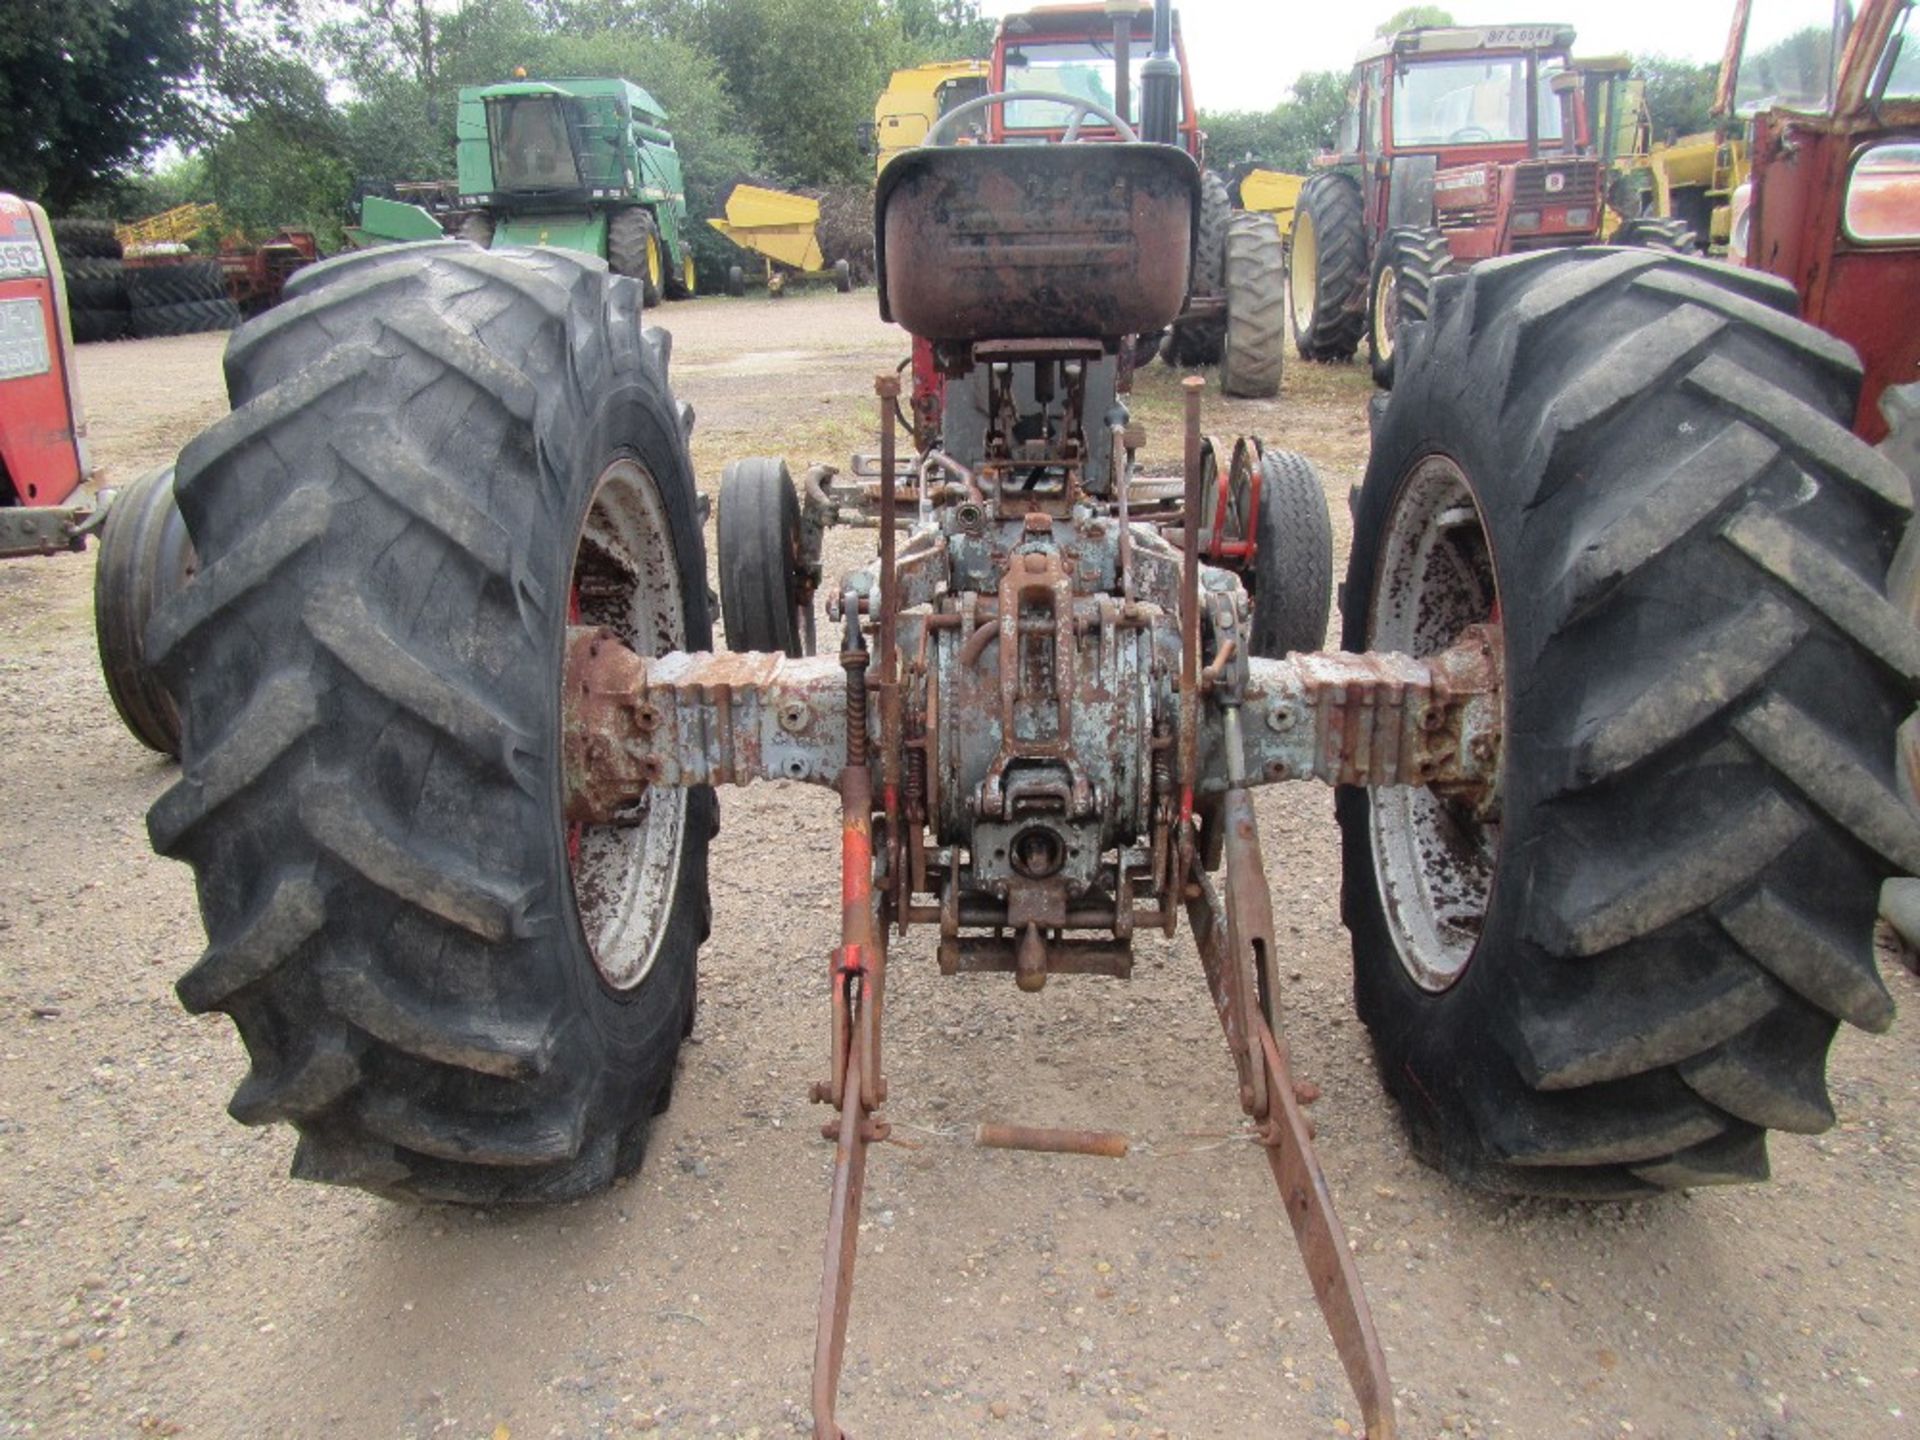 Massey Ferguson 188 2wd Tractor c/w 4 Bolt Pump. Ser. No. 359351 - Bild 4 aus 5